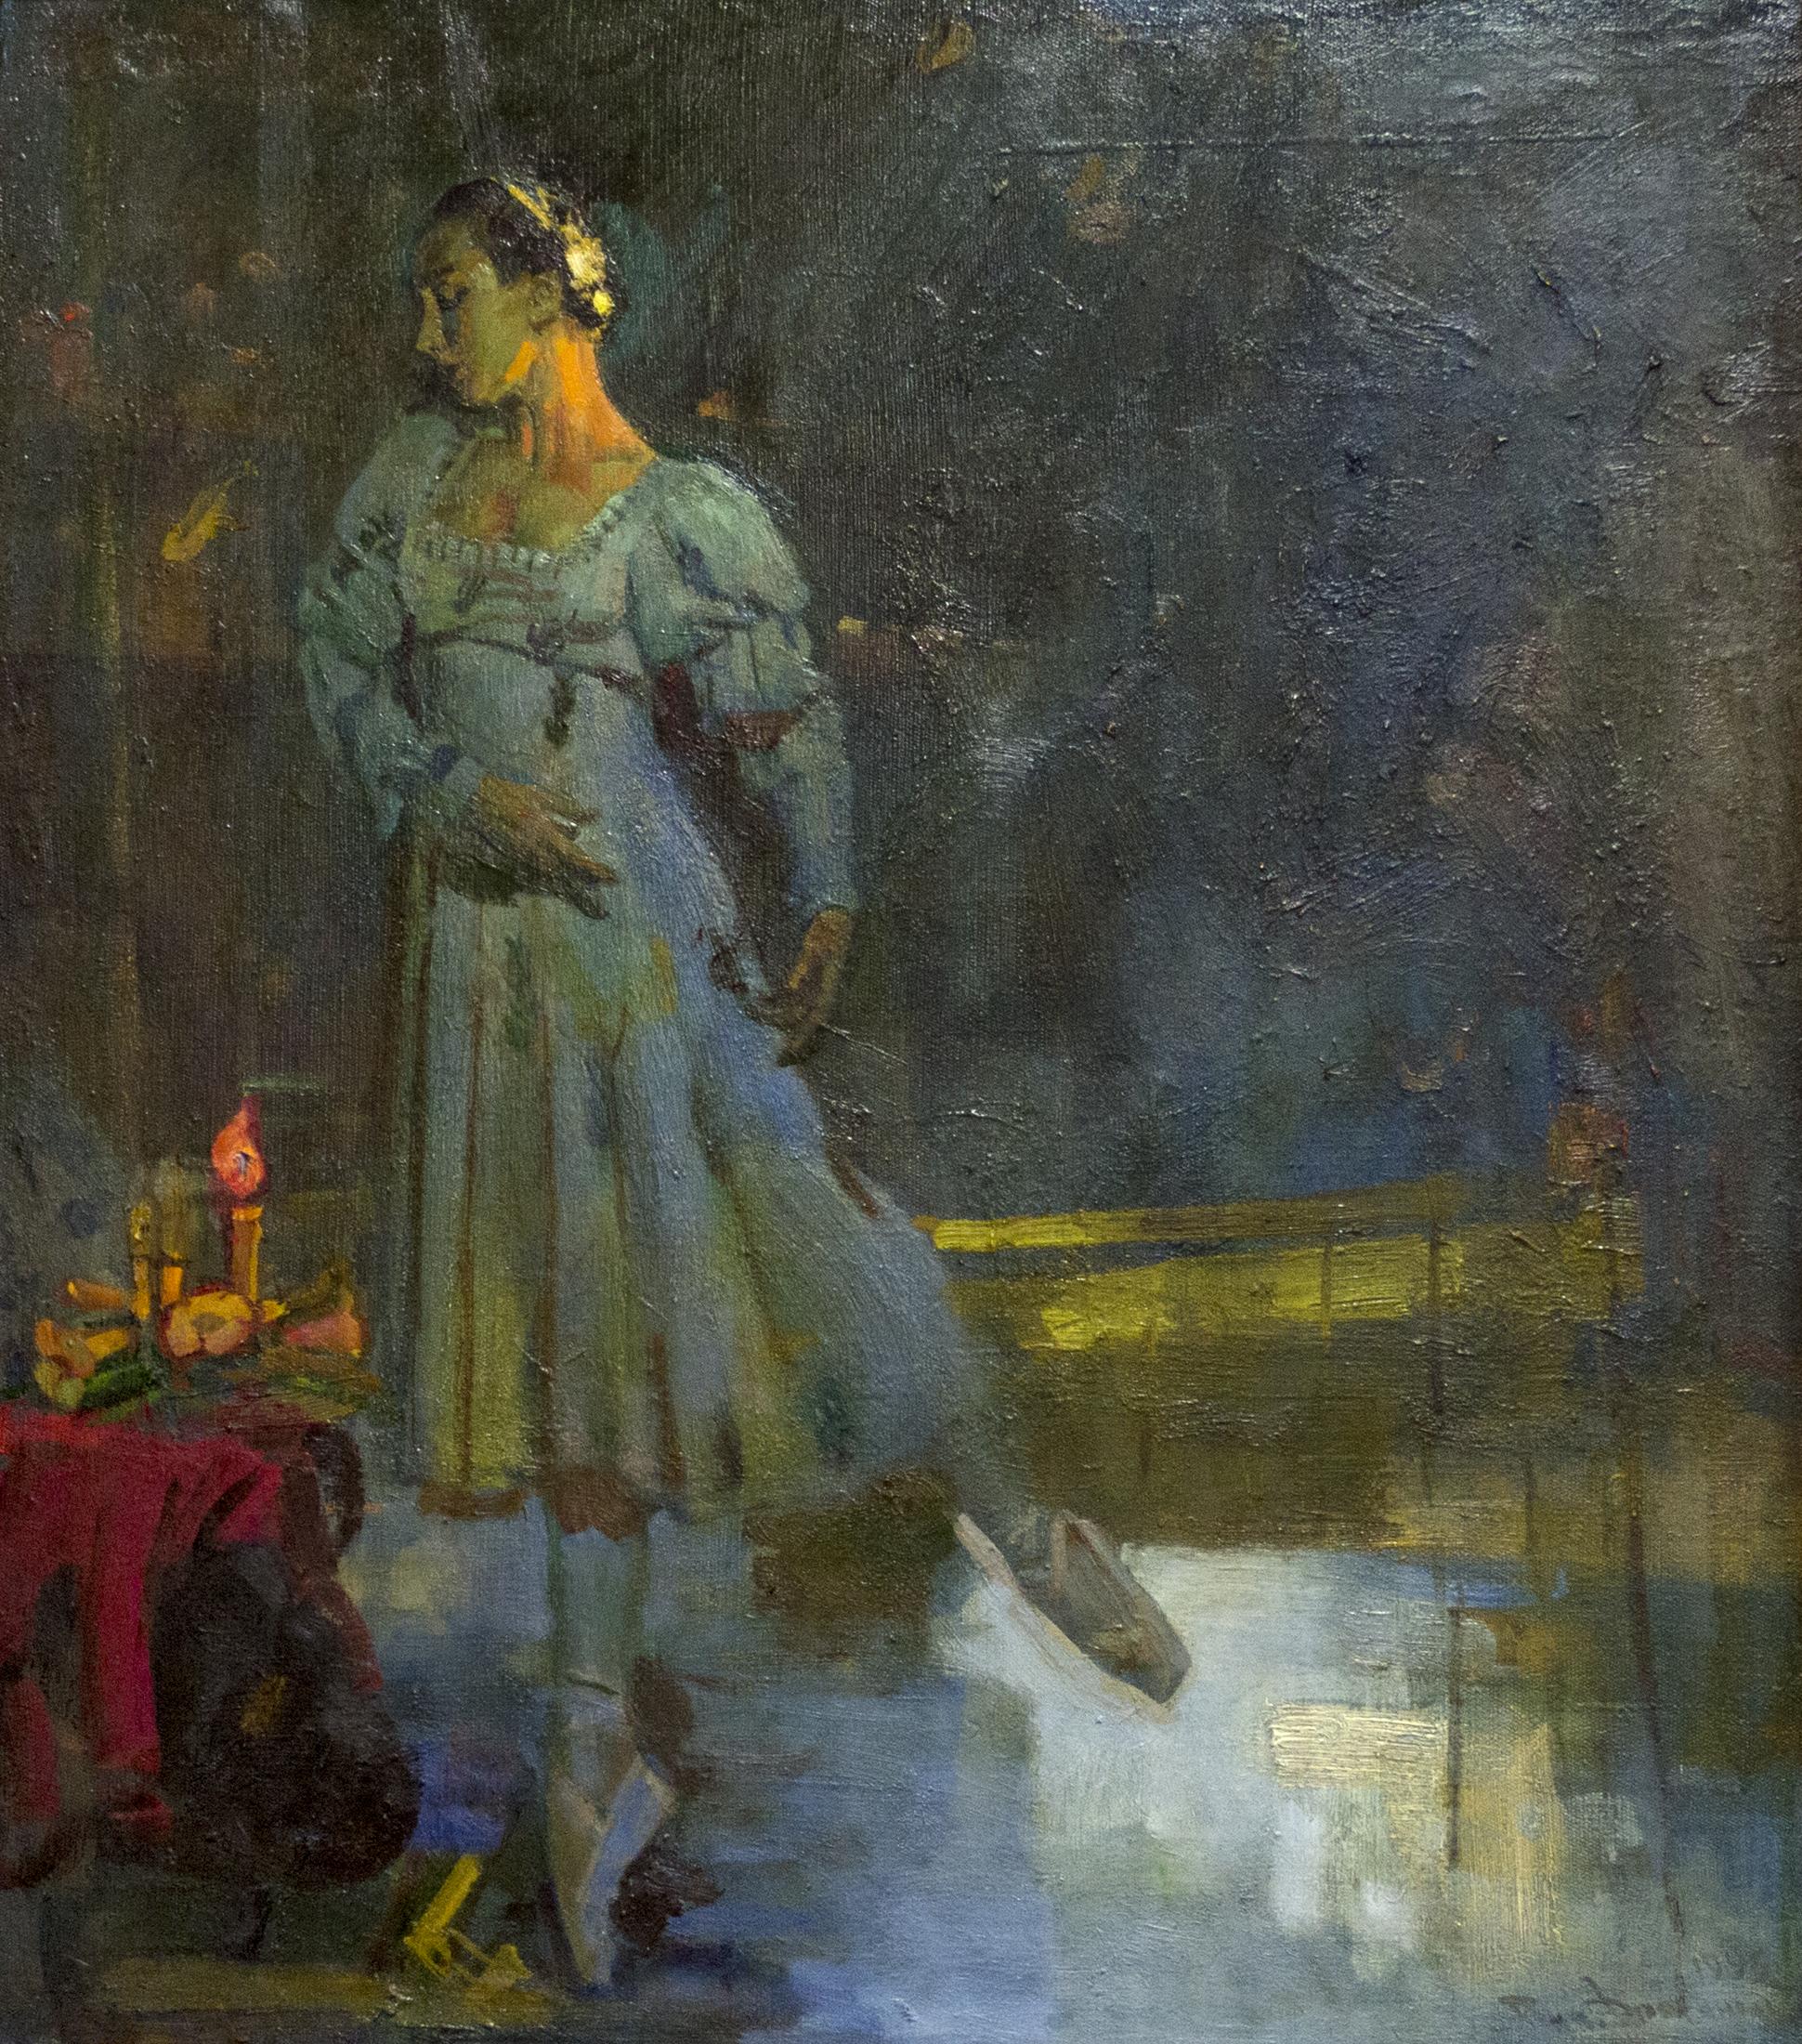 G. Ulanova as Julietta. Original modern art painting